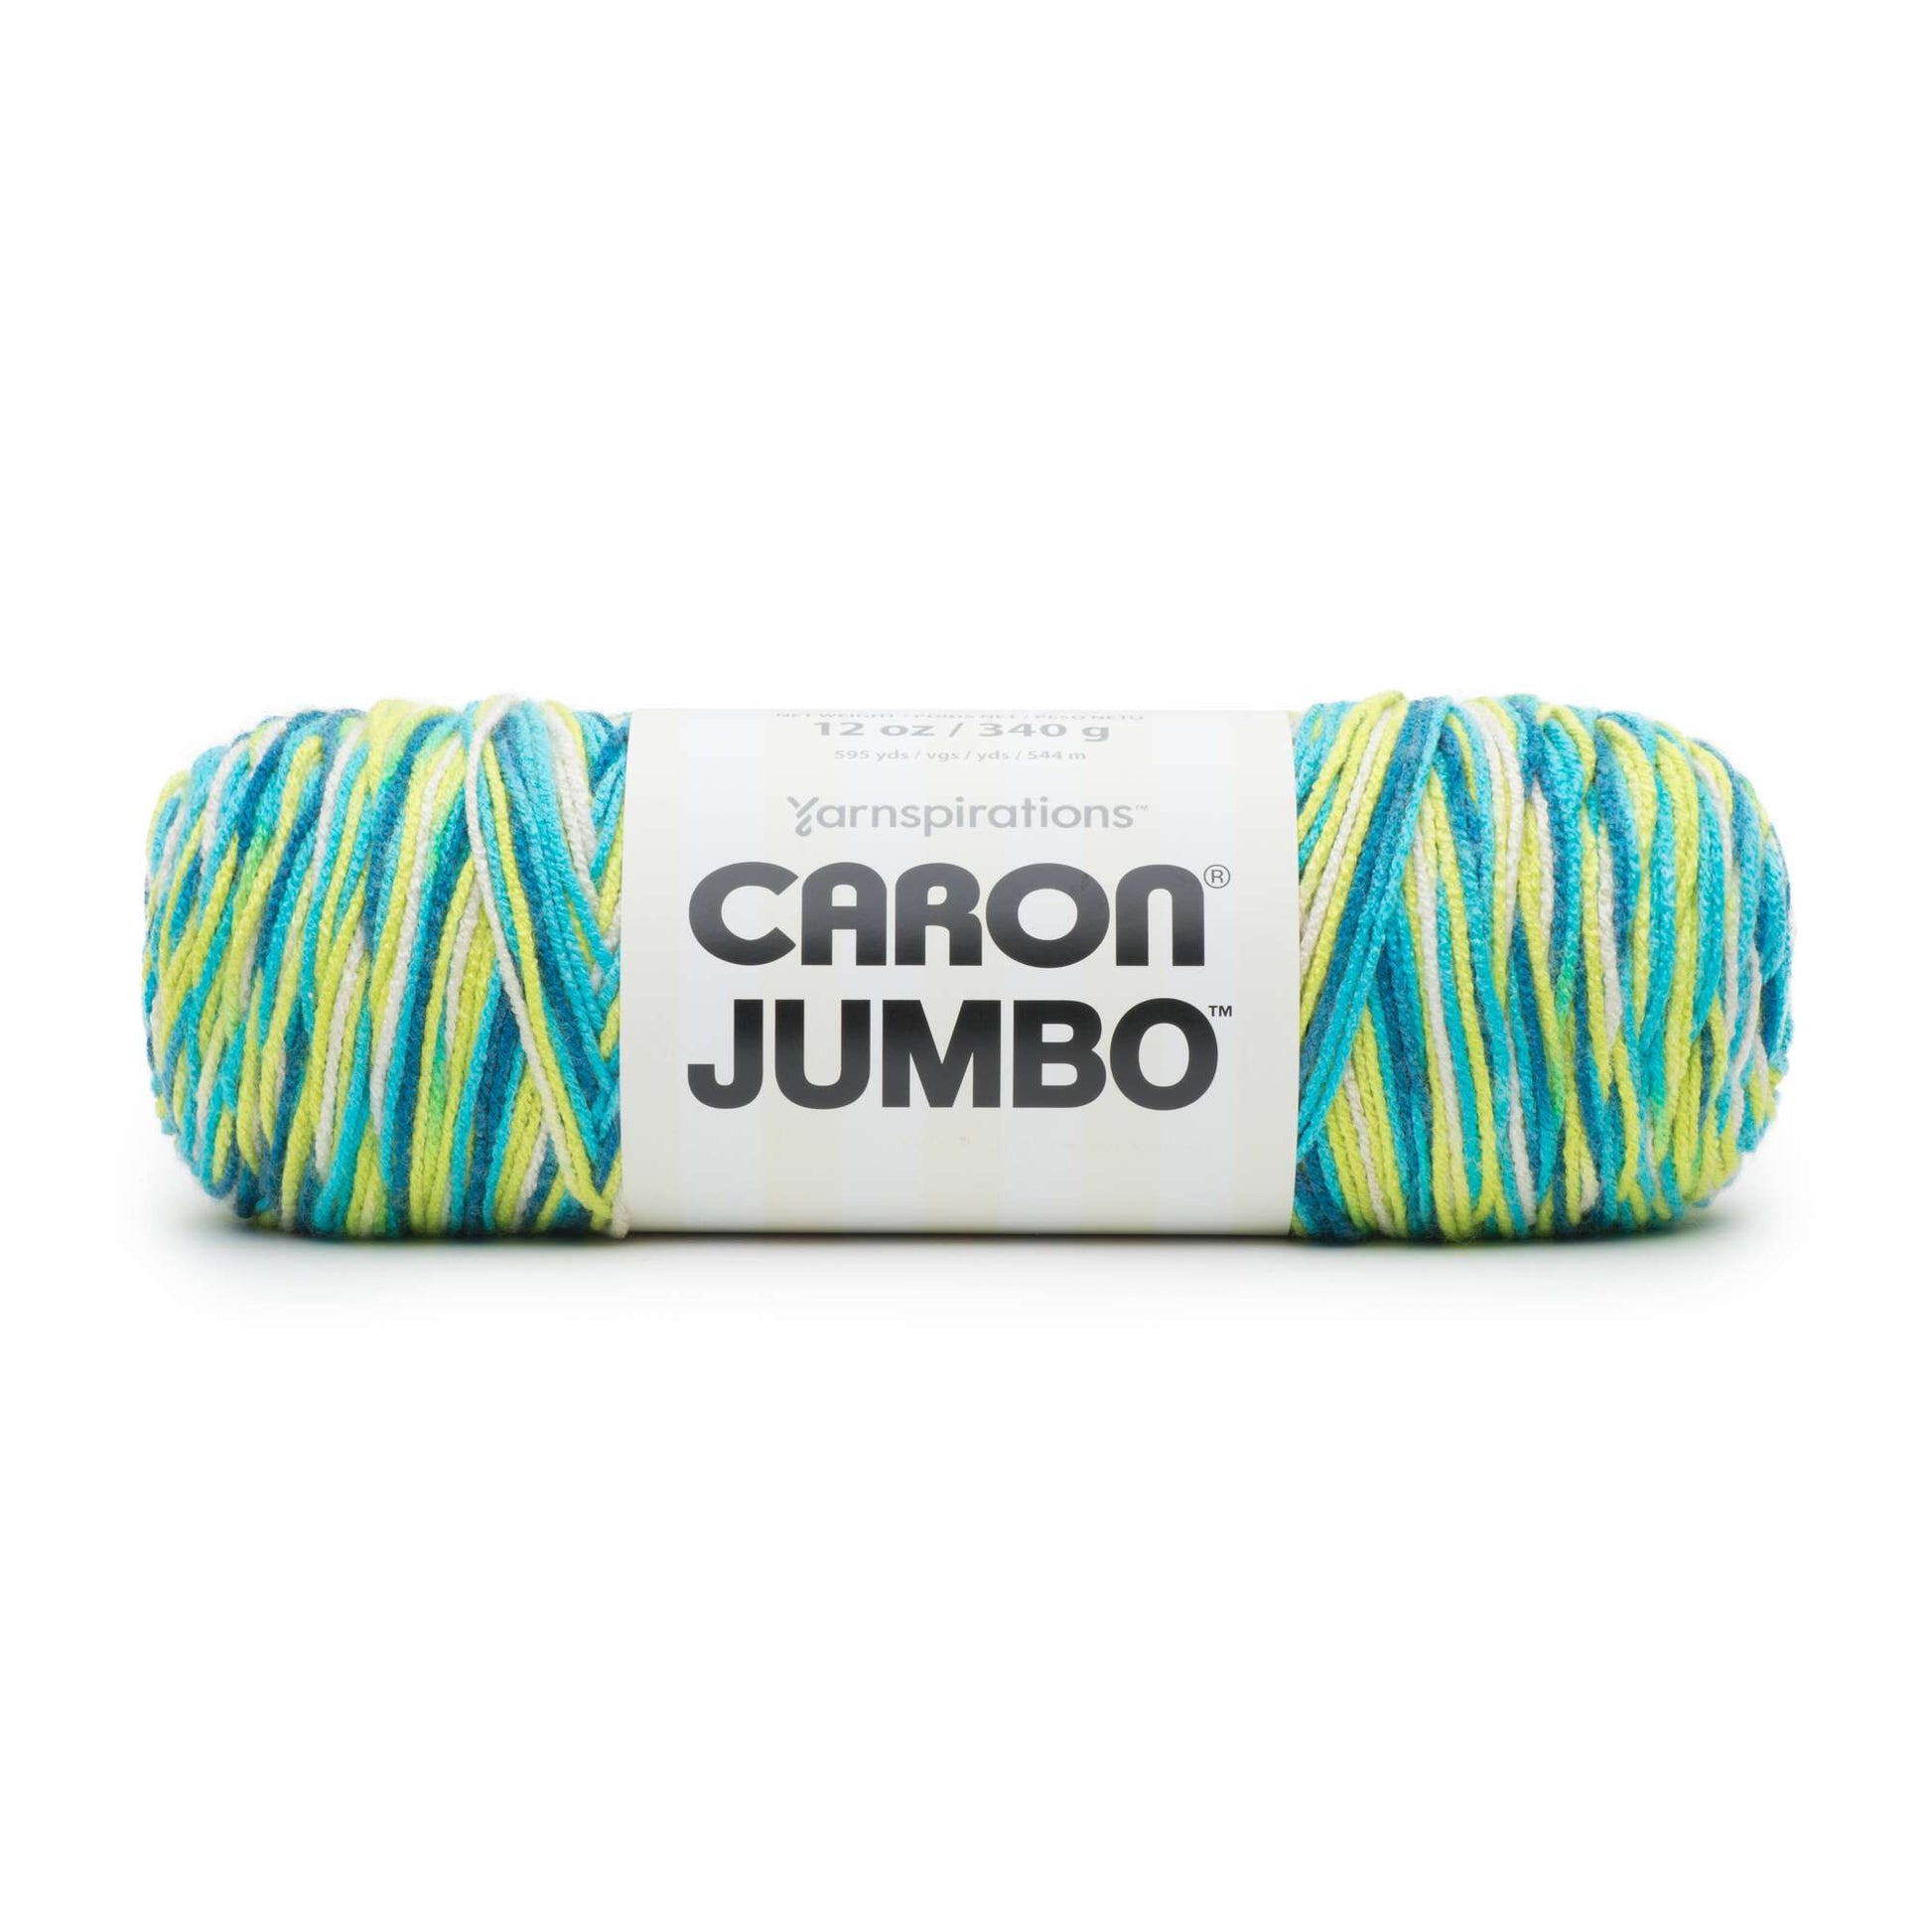 Caron Jumbo Yarn - Discontinued Shades